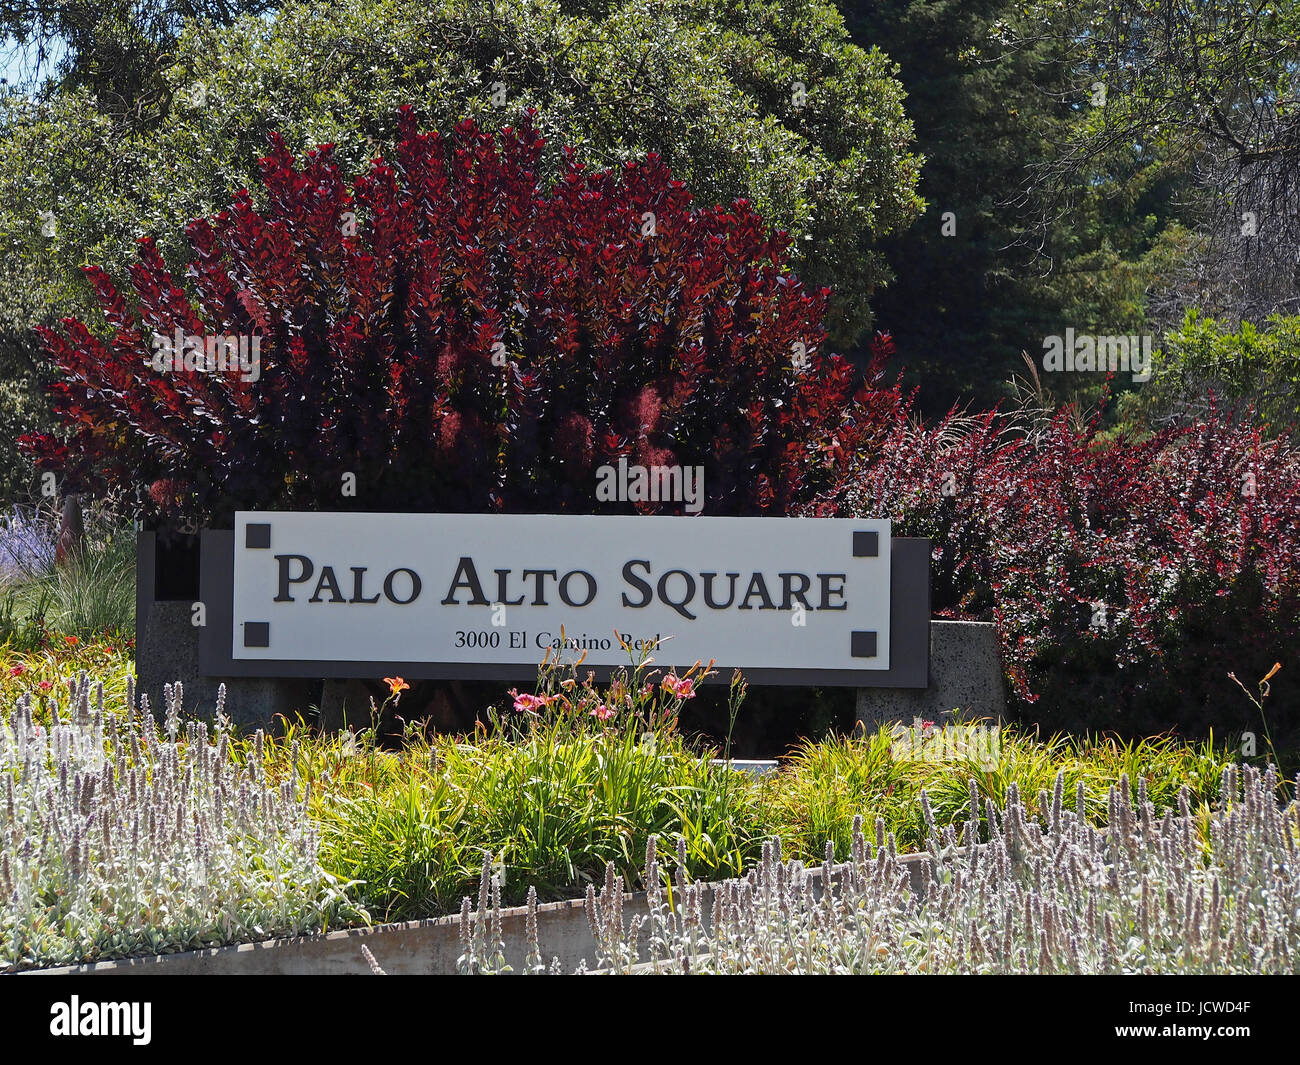 Palo Alto Square signe à El Camino et Page mill road. Santa Clara, CA Banque D'Images